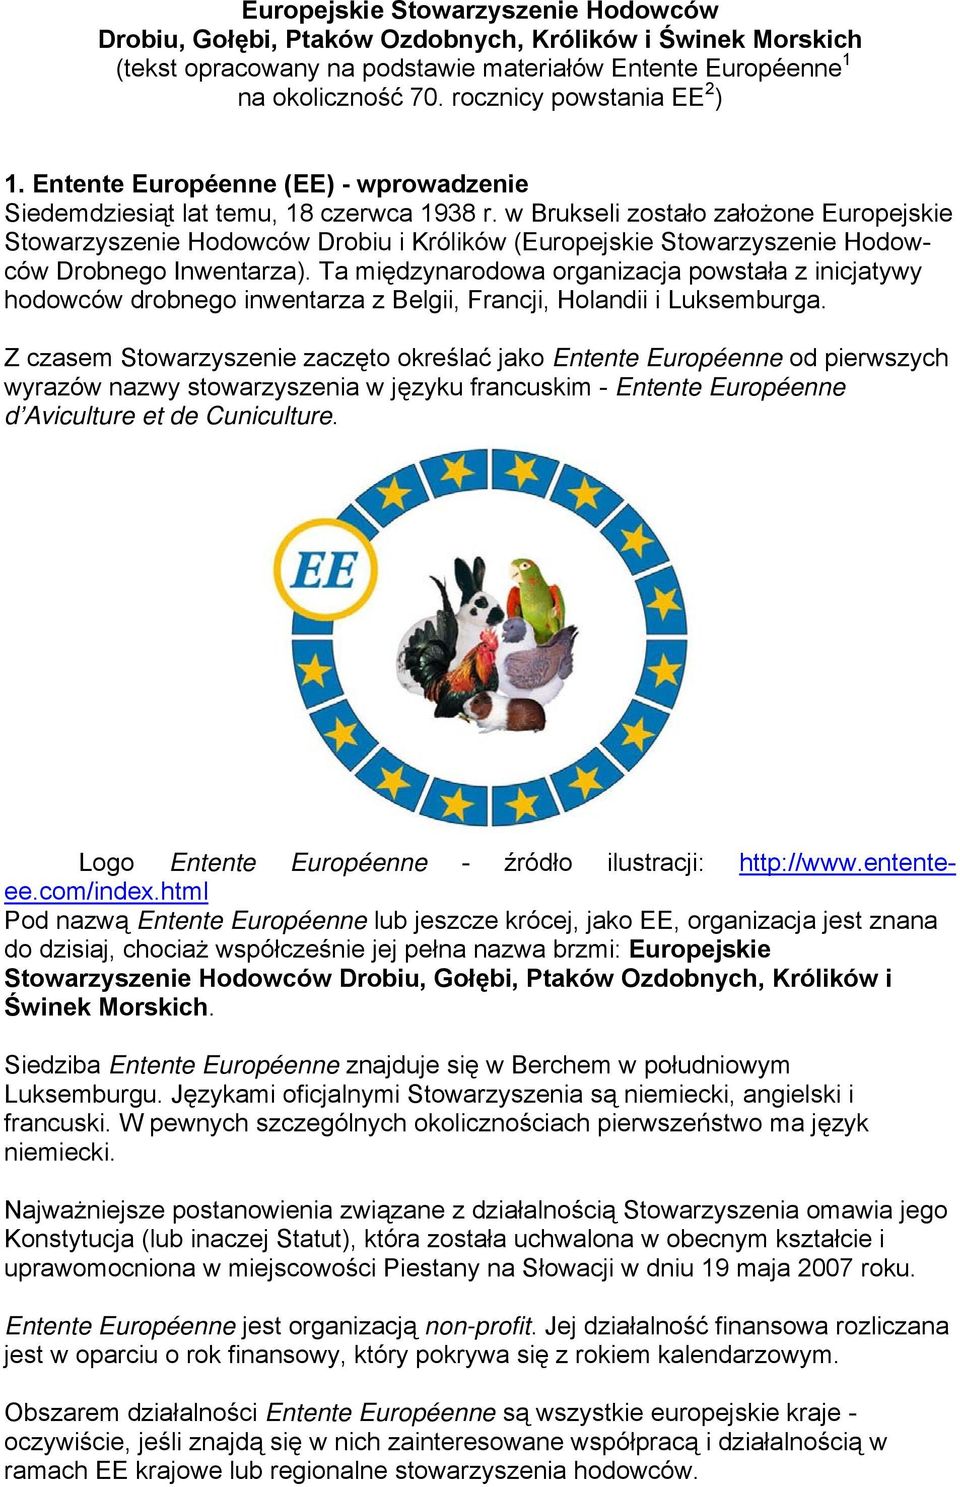 w Brukseli zostało założone Europejskie Stowarzyszenie Hodowców Drobiu i Królików (Europejskie Stowarzyszenie Hodowców Drobnego Inwentarza).